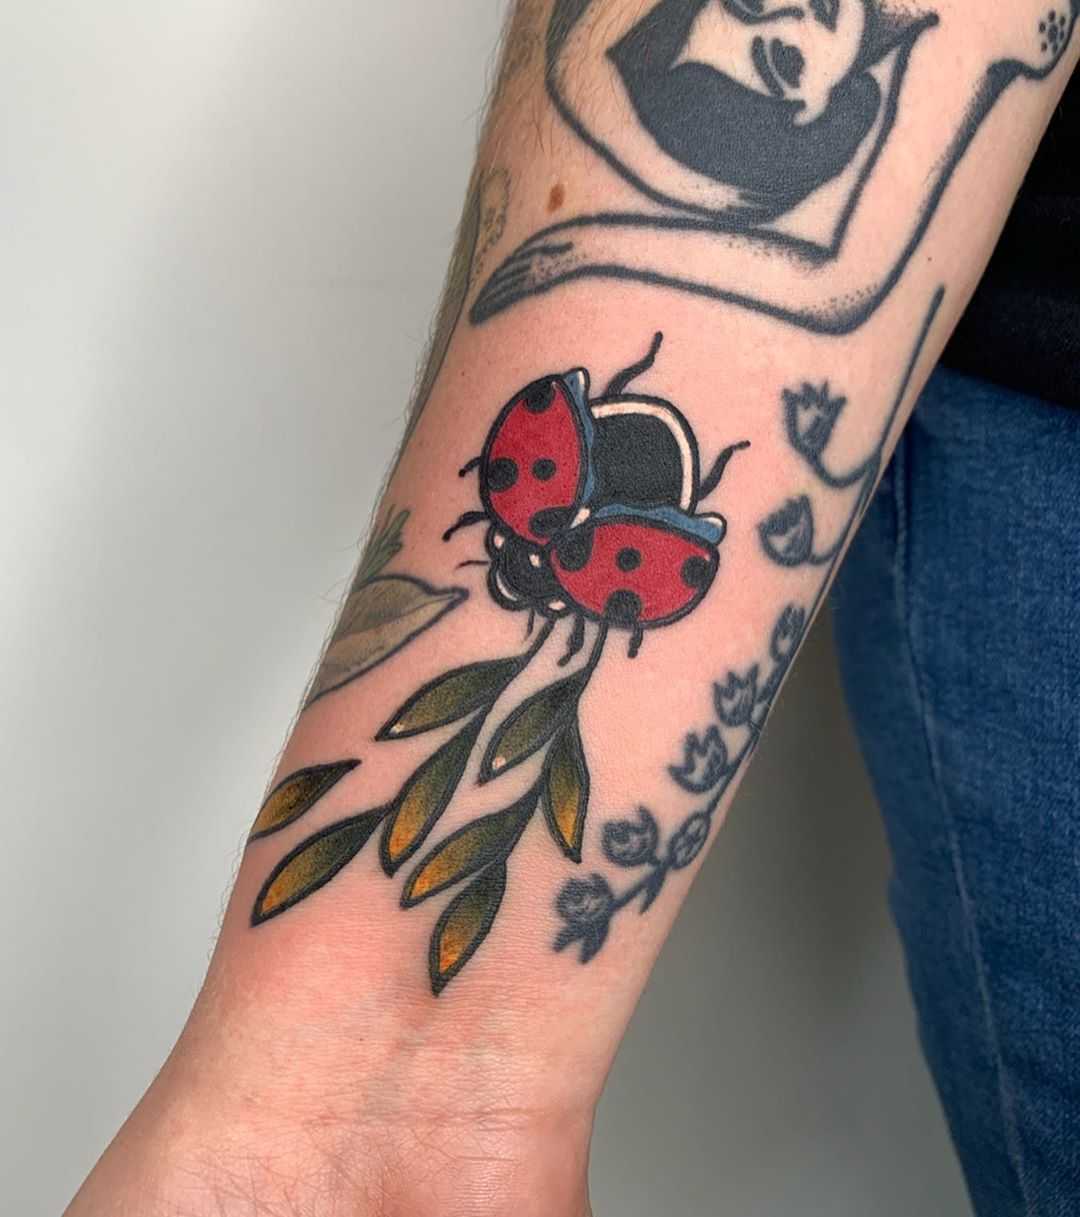 Ladybird by Lara Simonetta